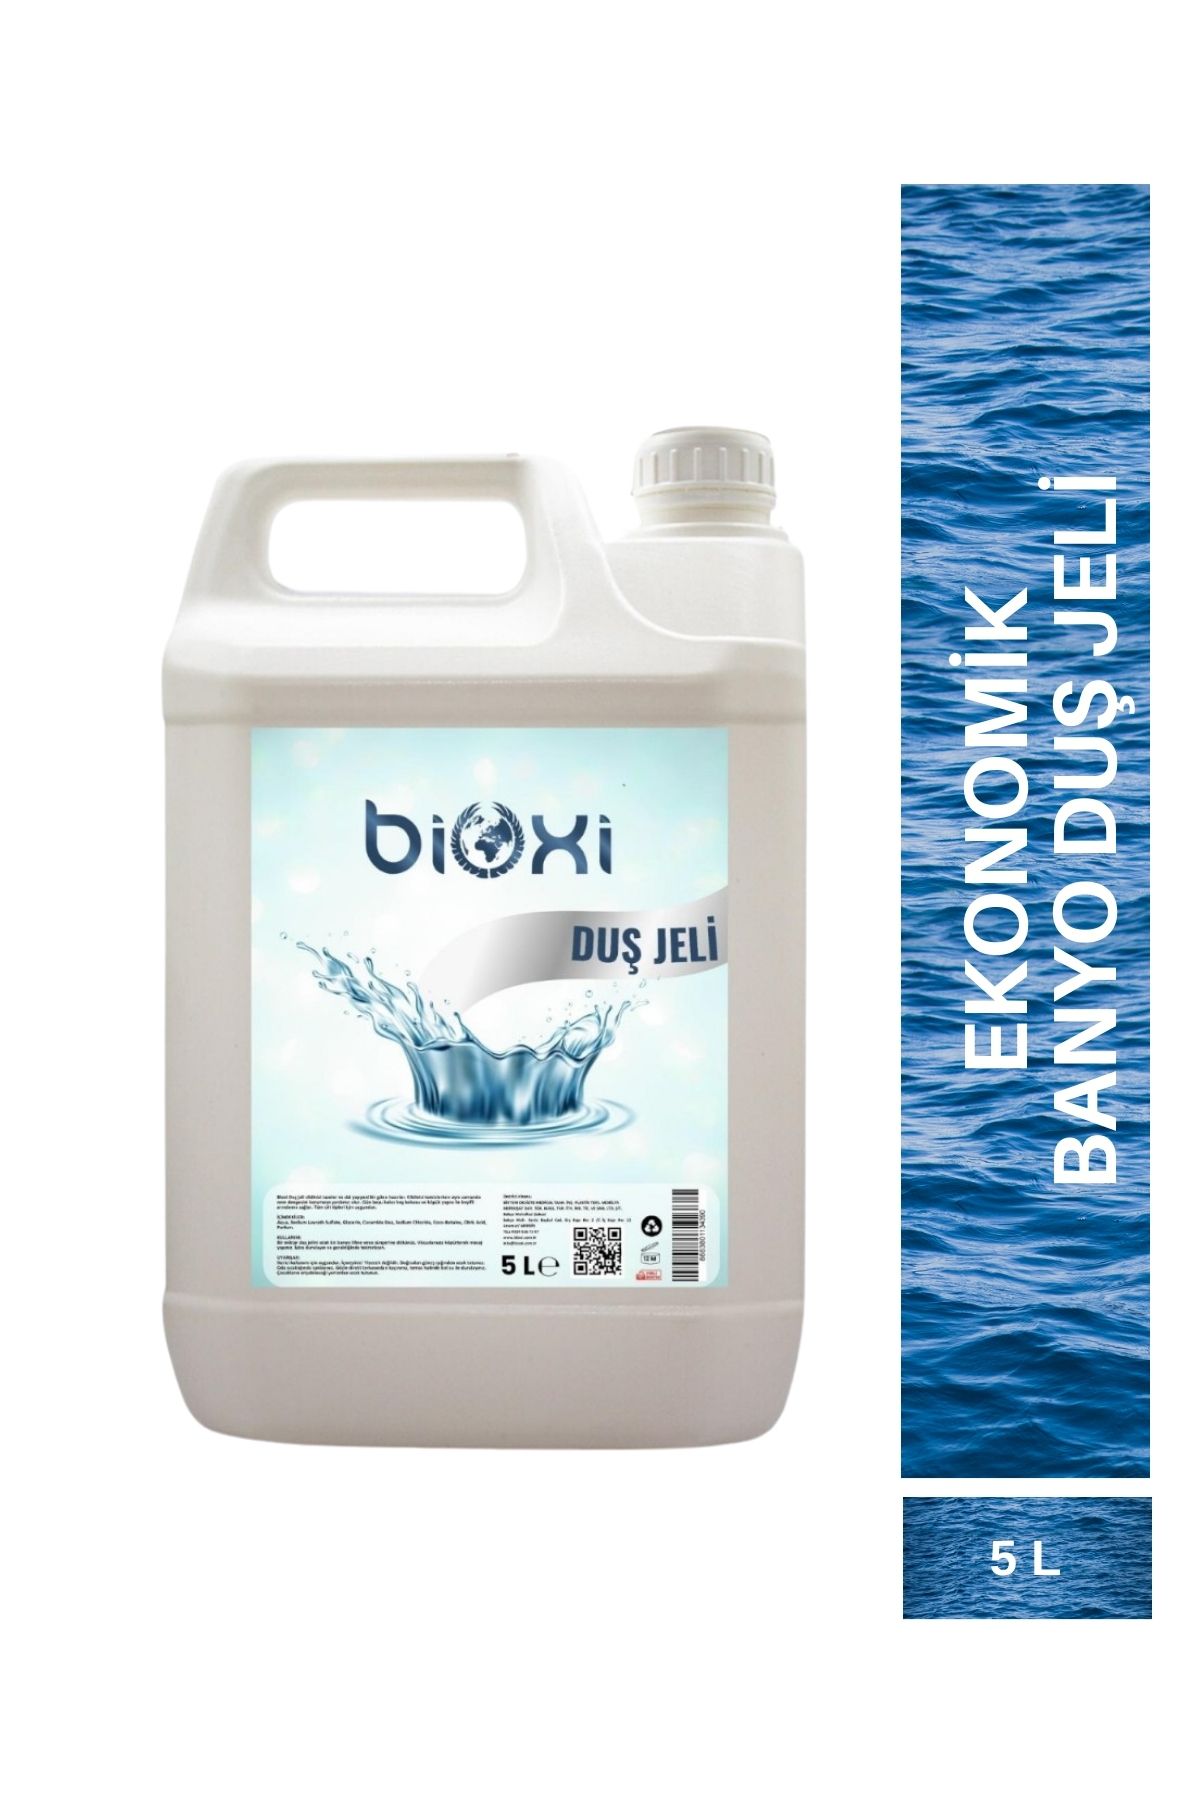 Bioxi ® Duş Jeli 5 Lt Ile Yenilenin!